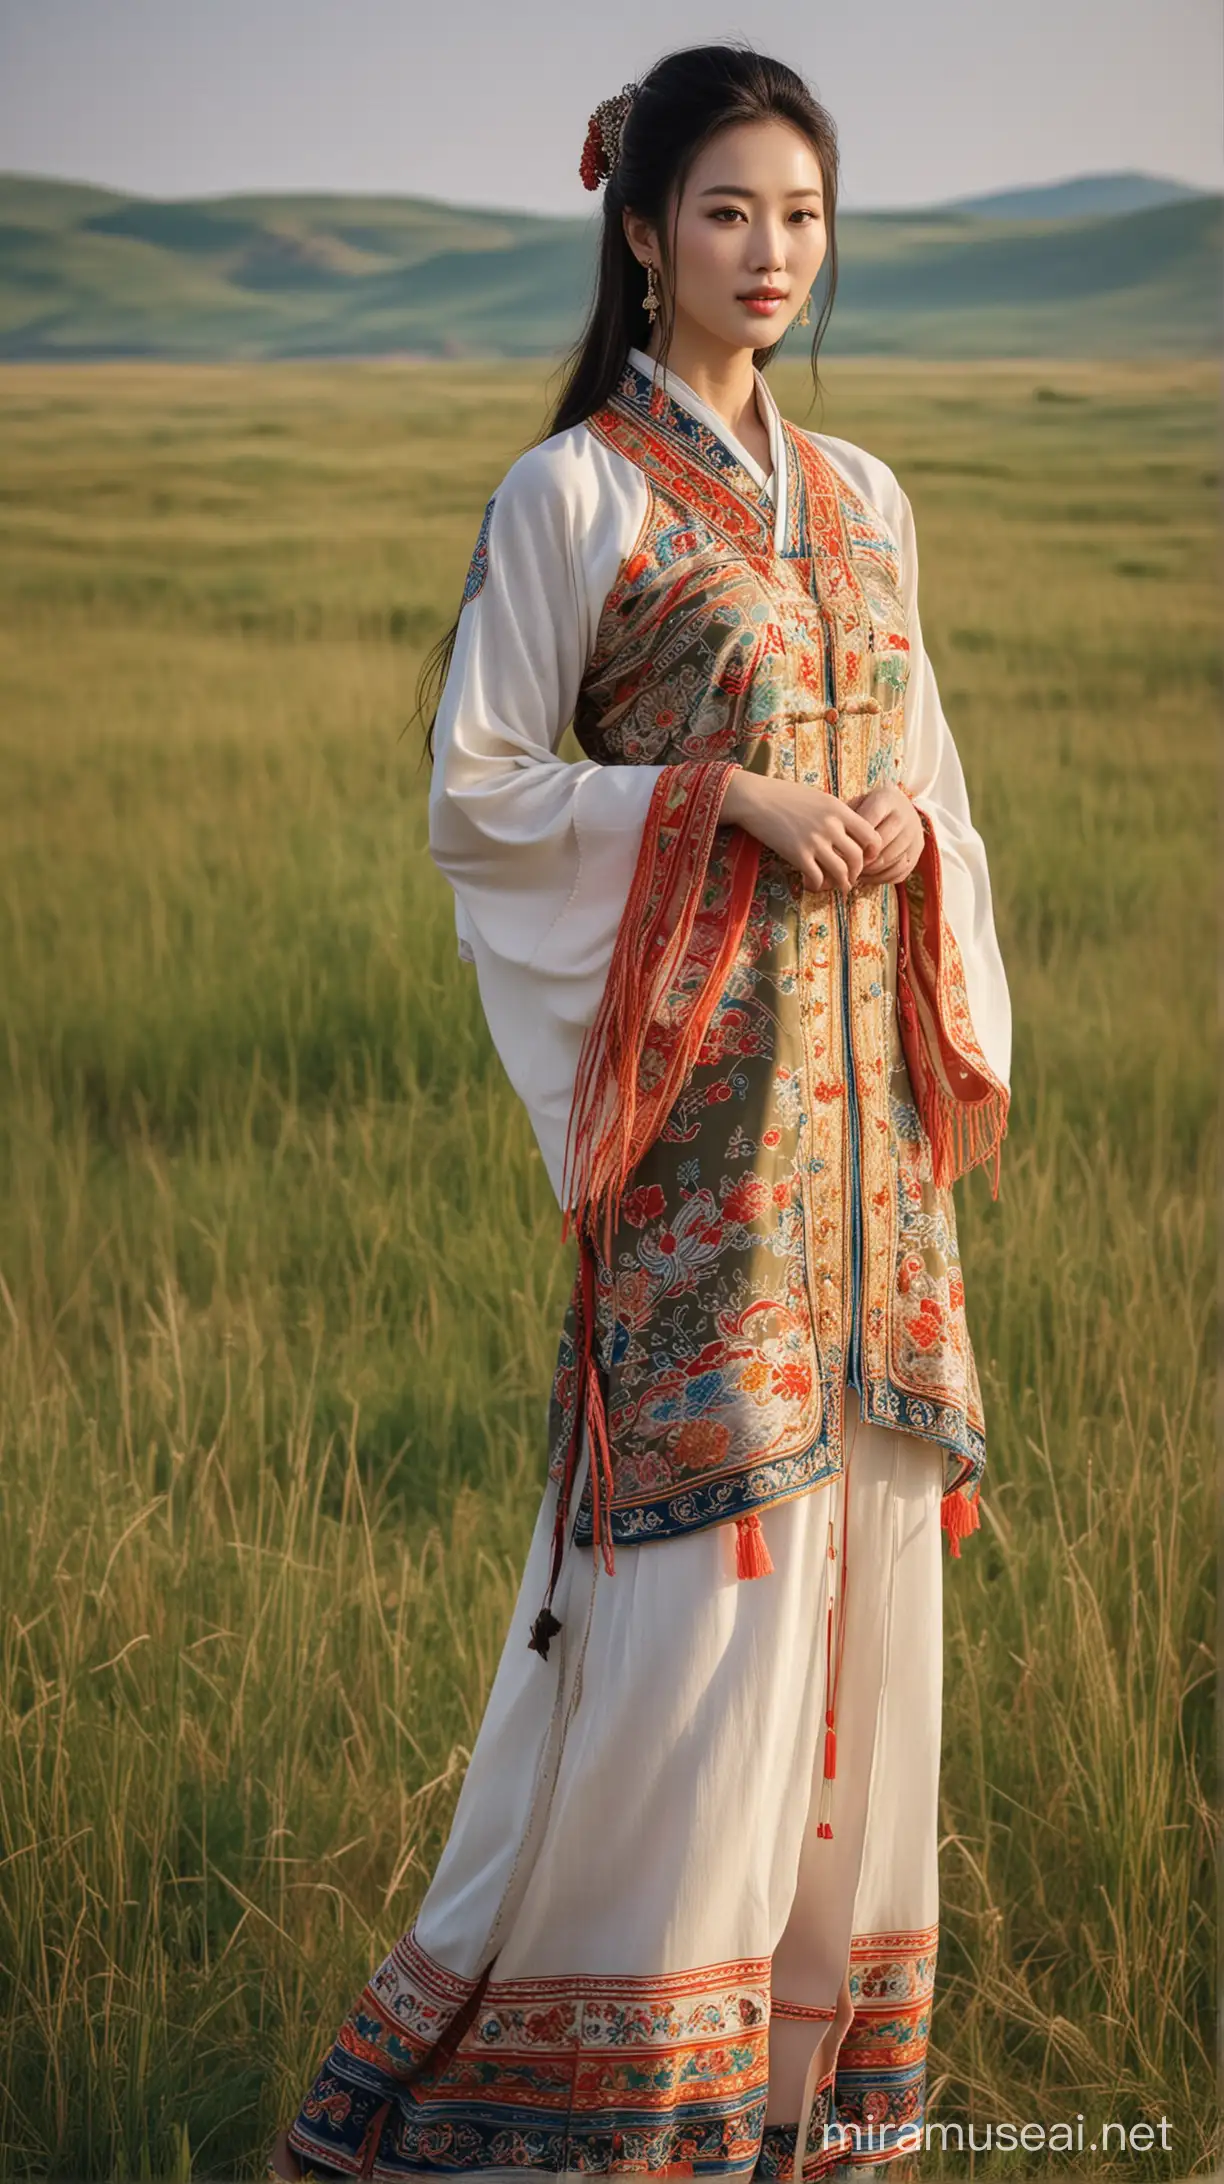 一位穿着民族服装身材高挑丰满的中国美女在美丽的内蒙古草原